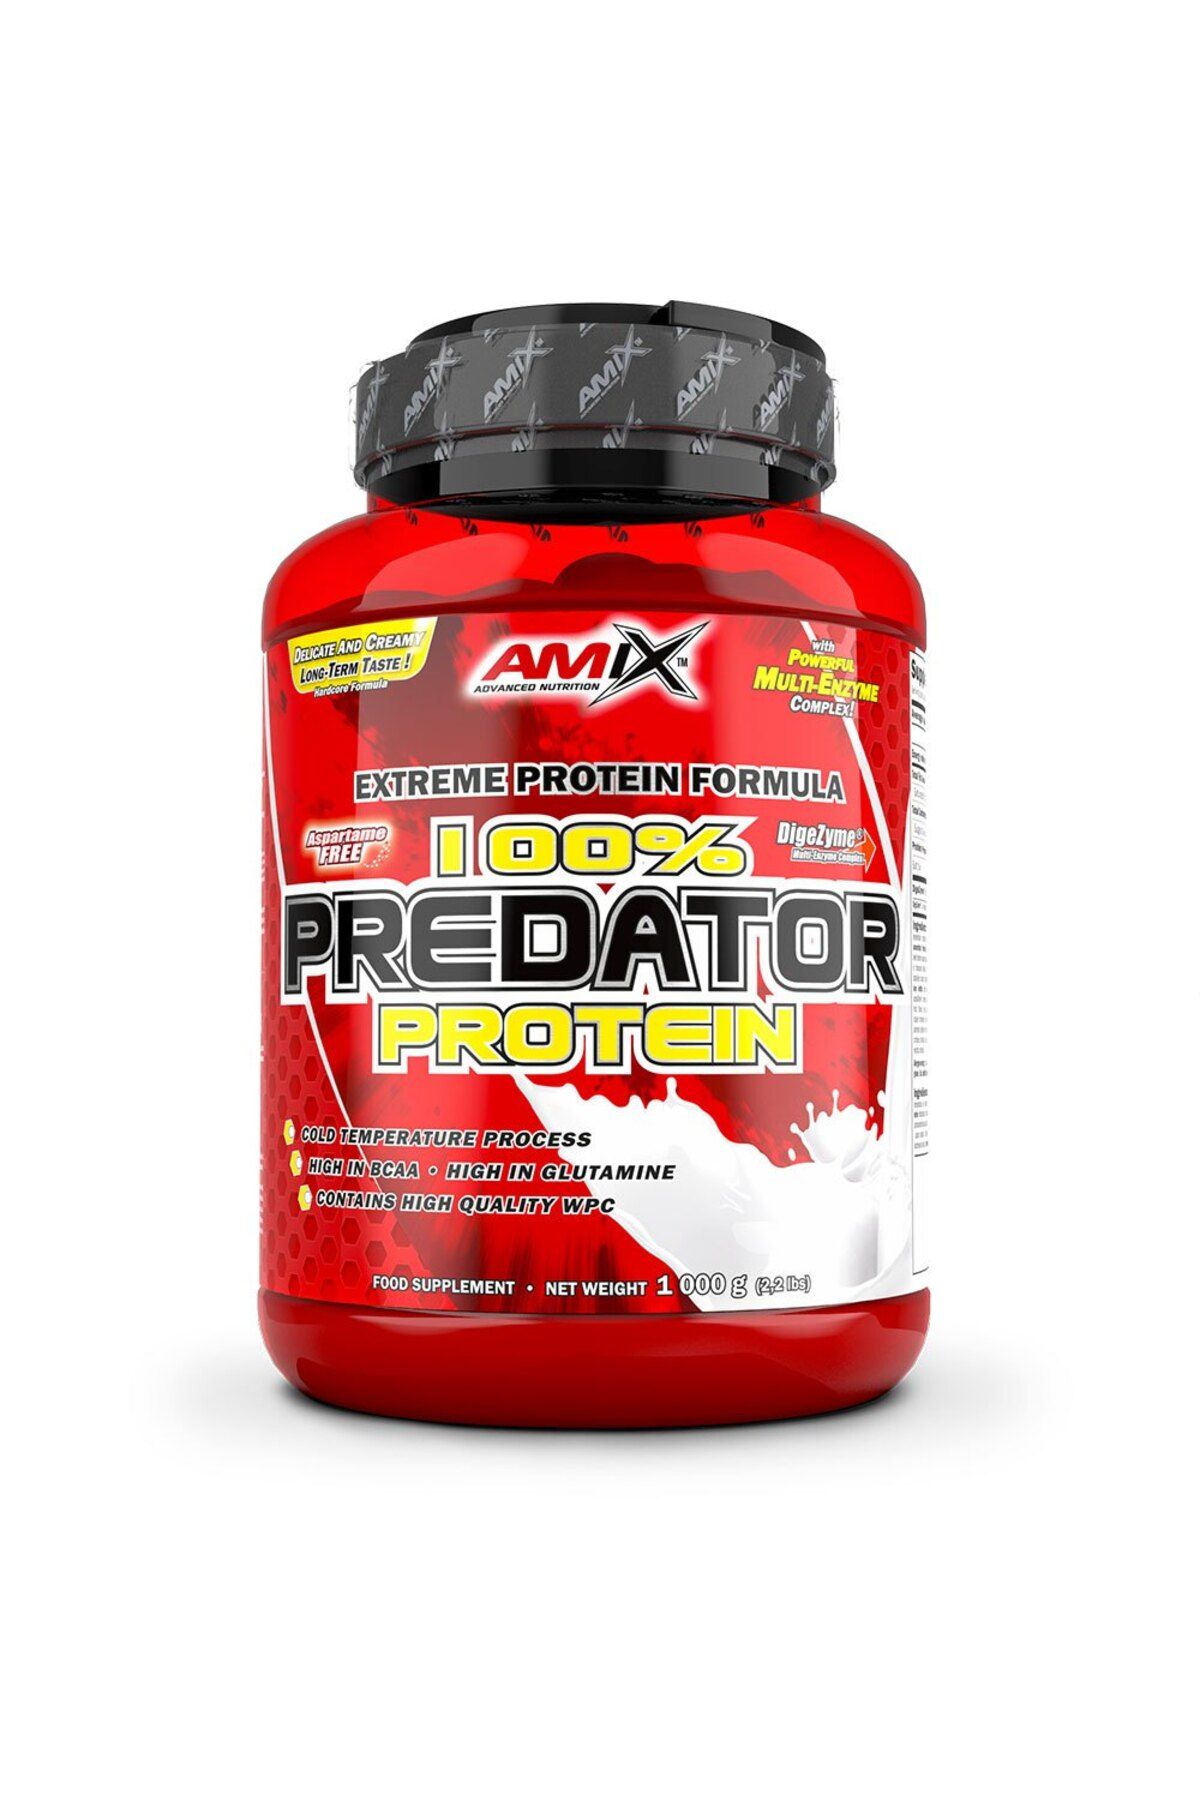 AMIX Predator Protein 1000 g - 30 SERVİS